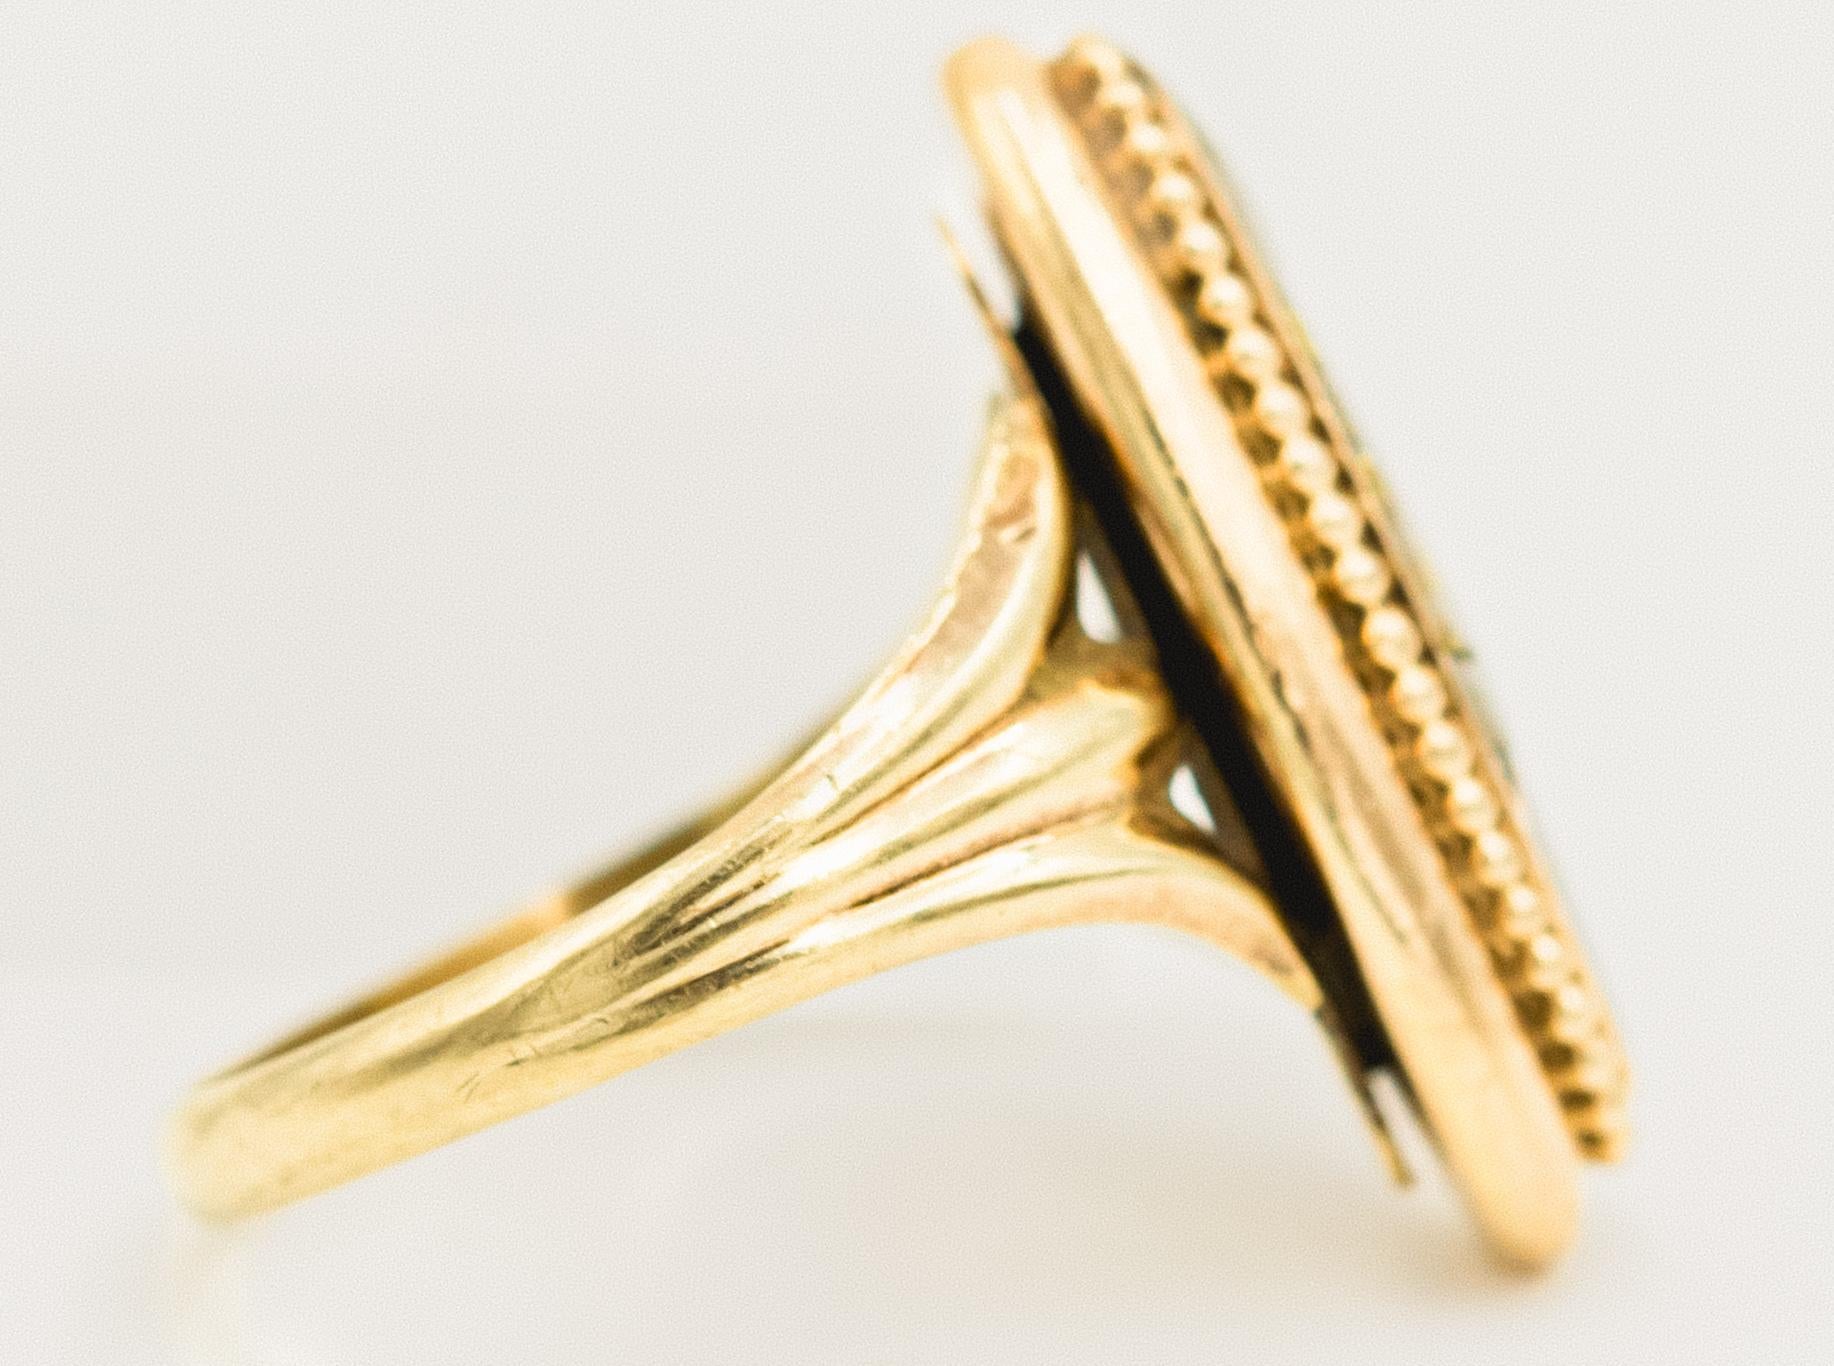 Rare Antique Gold Quartz Gold Ring In Good Condition For Sale In Miami Beach, FL